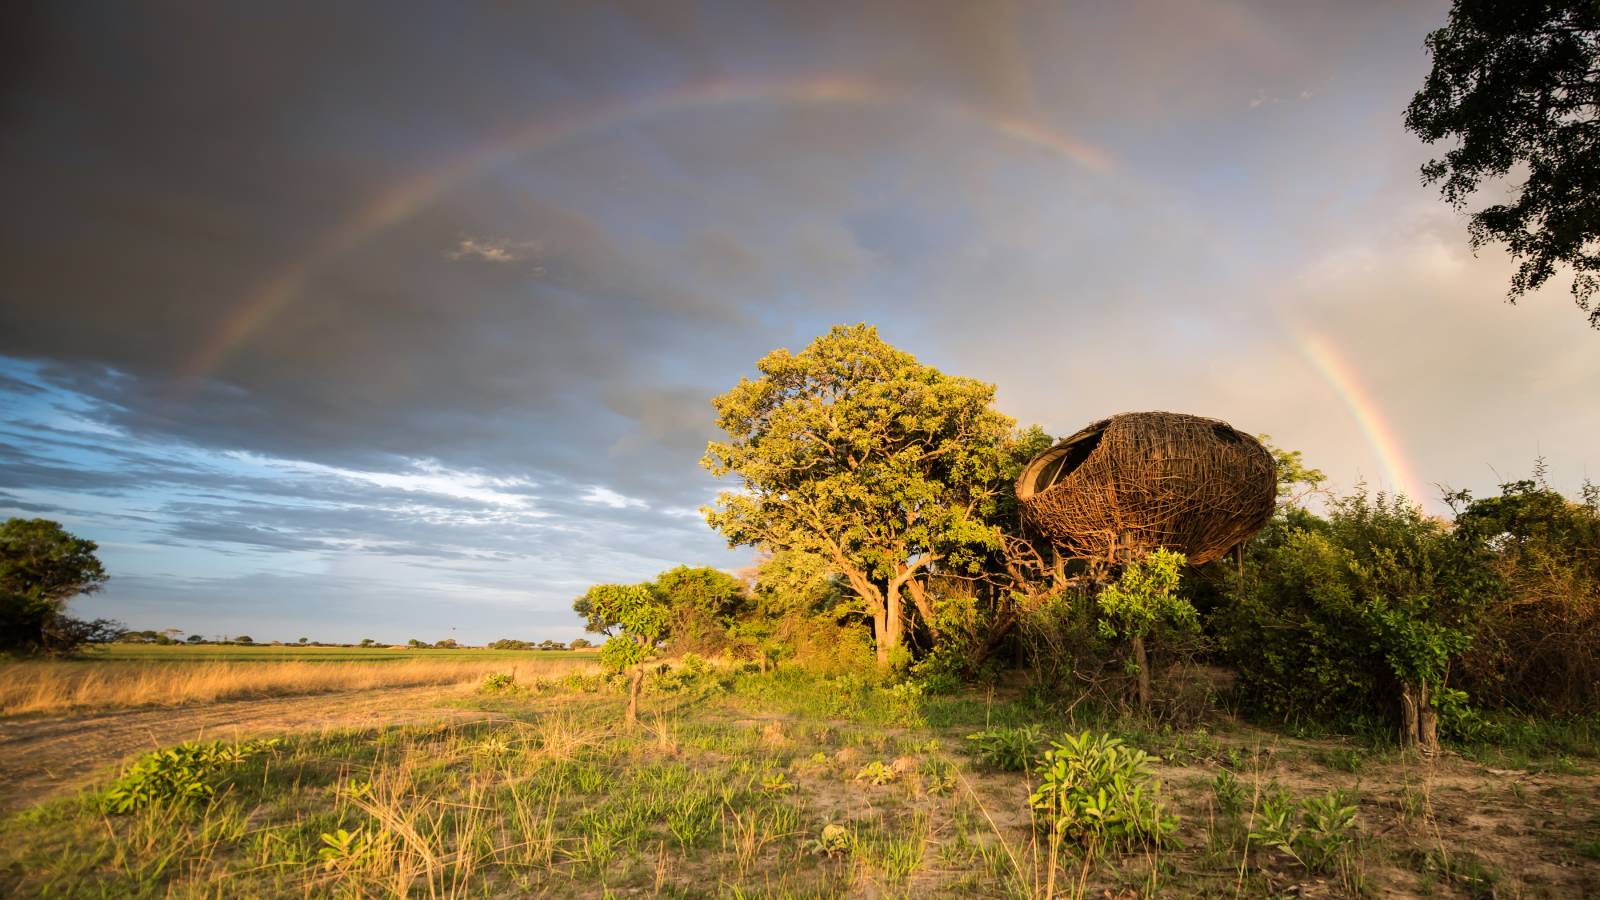 Dormir en un nido de pájaros, todo es posible en Zambia